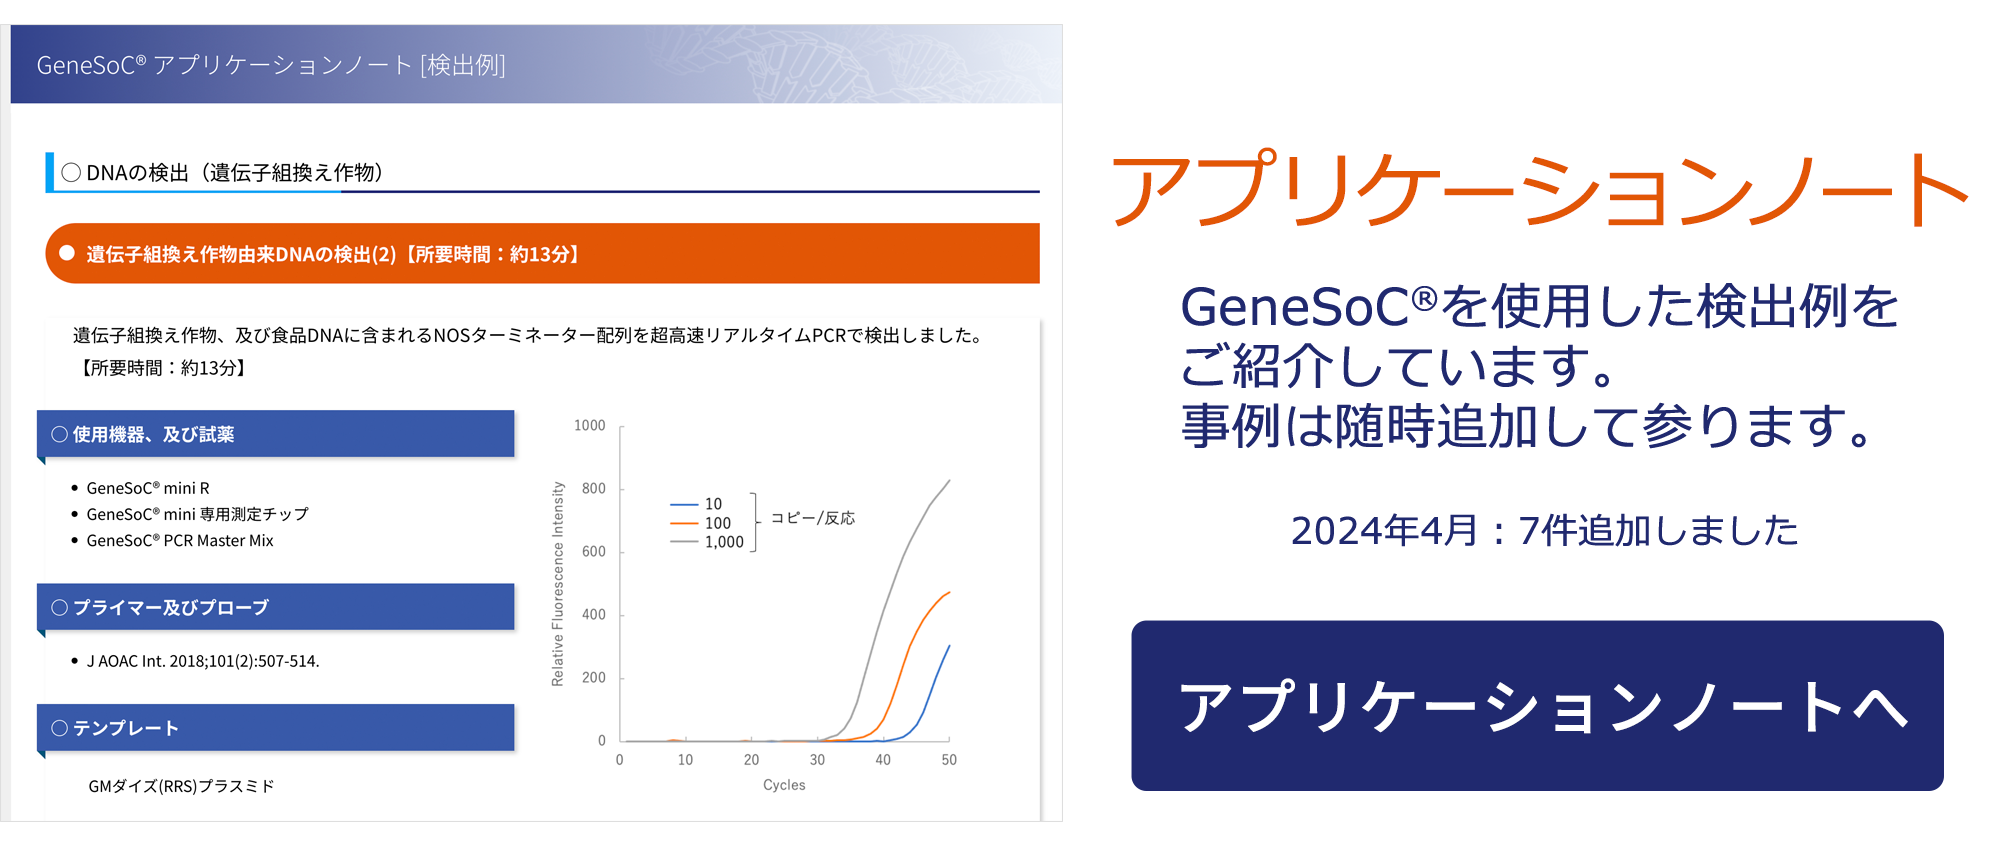 アプリケーションノート　GeneSoC® を使用した検出例をご紹介。随時事例を追加して参ります。　2024年4月：7件追加しました　アプリケーションノートへ